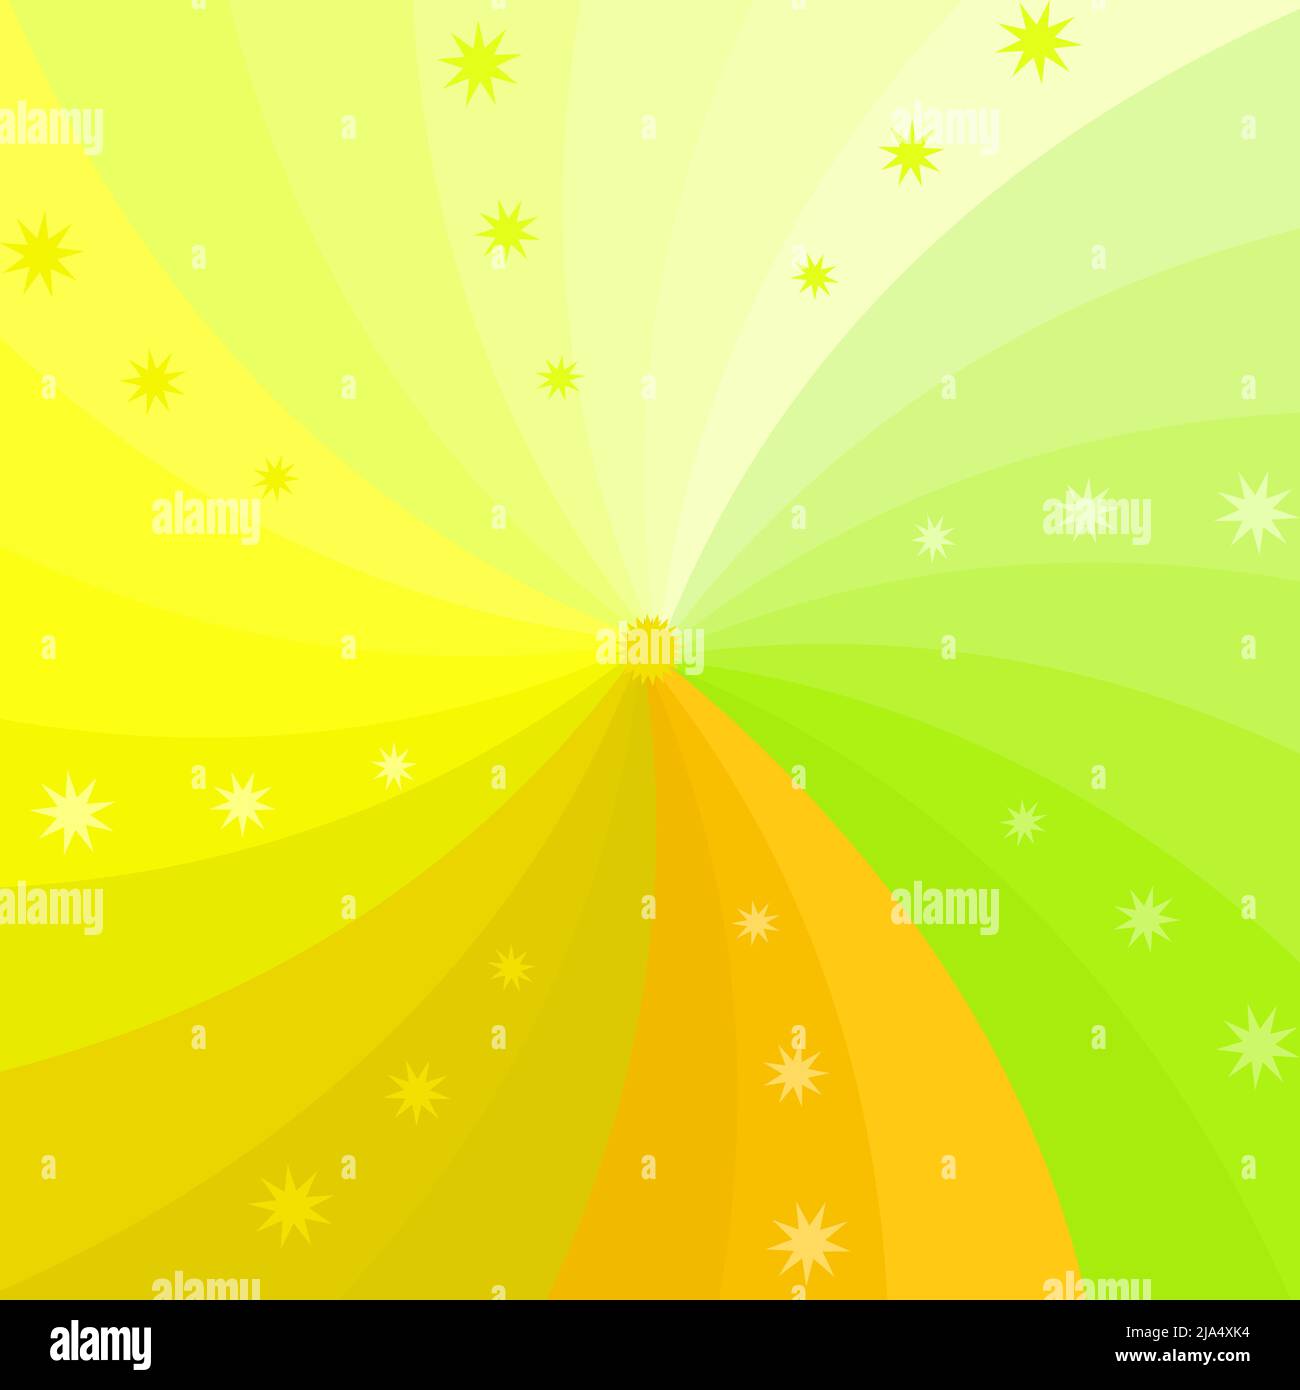 Esplosione estate festival rainbow ray lucido sunburst frattale astratto sfondo carta da parati modello illustrazione vettoriale Illustrazione Vettoriale